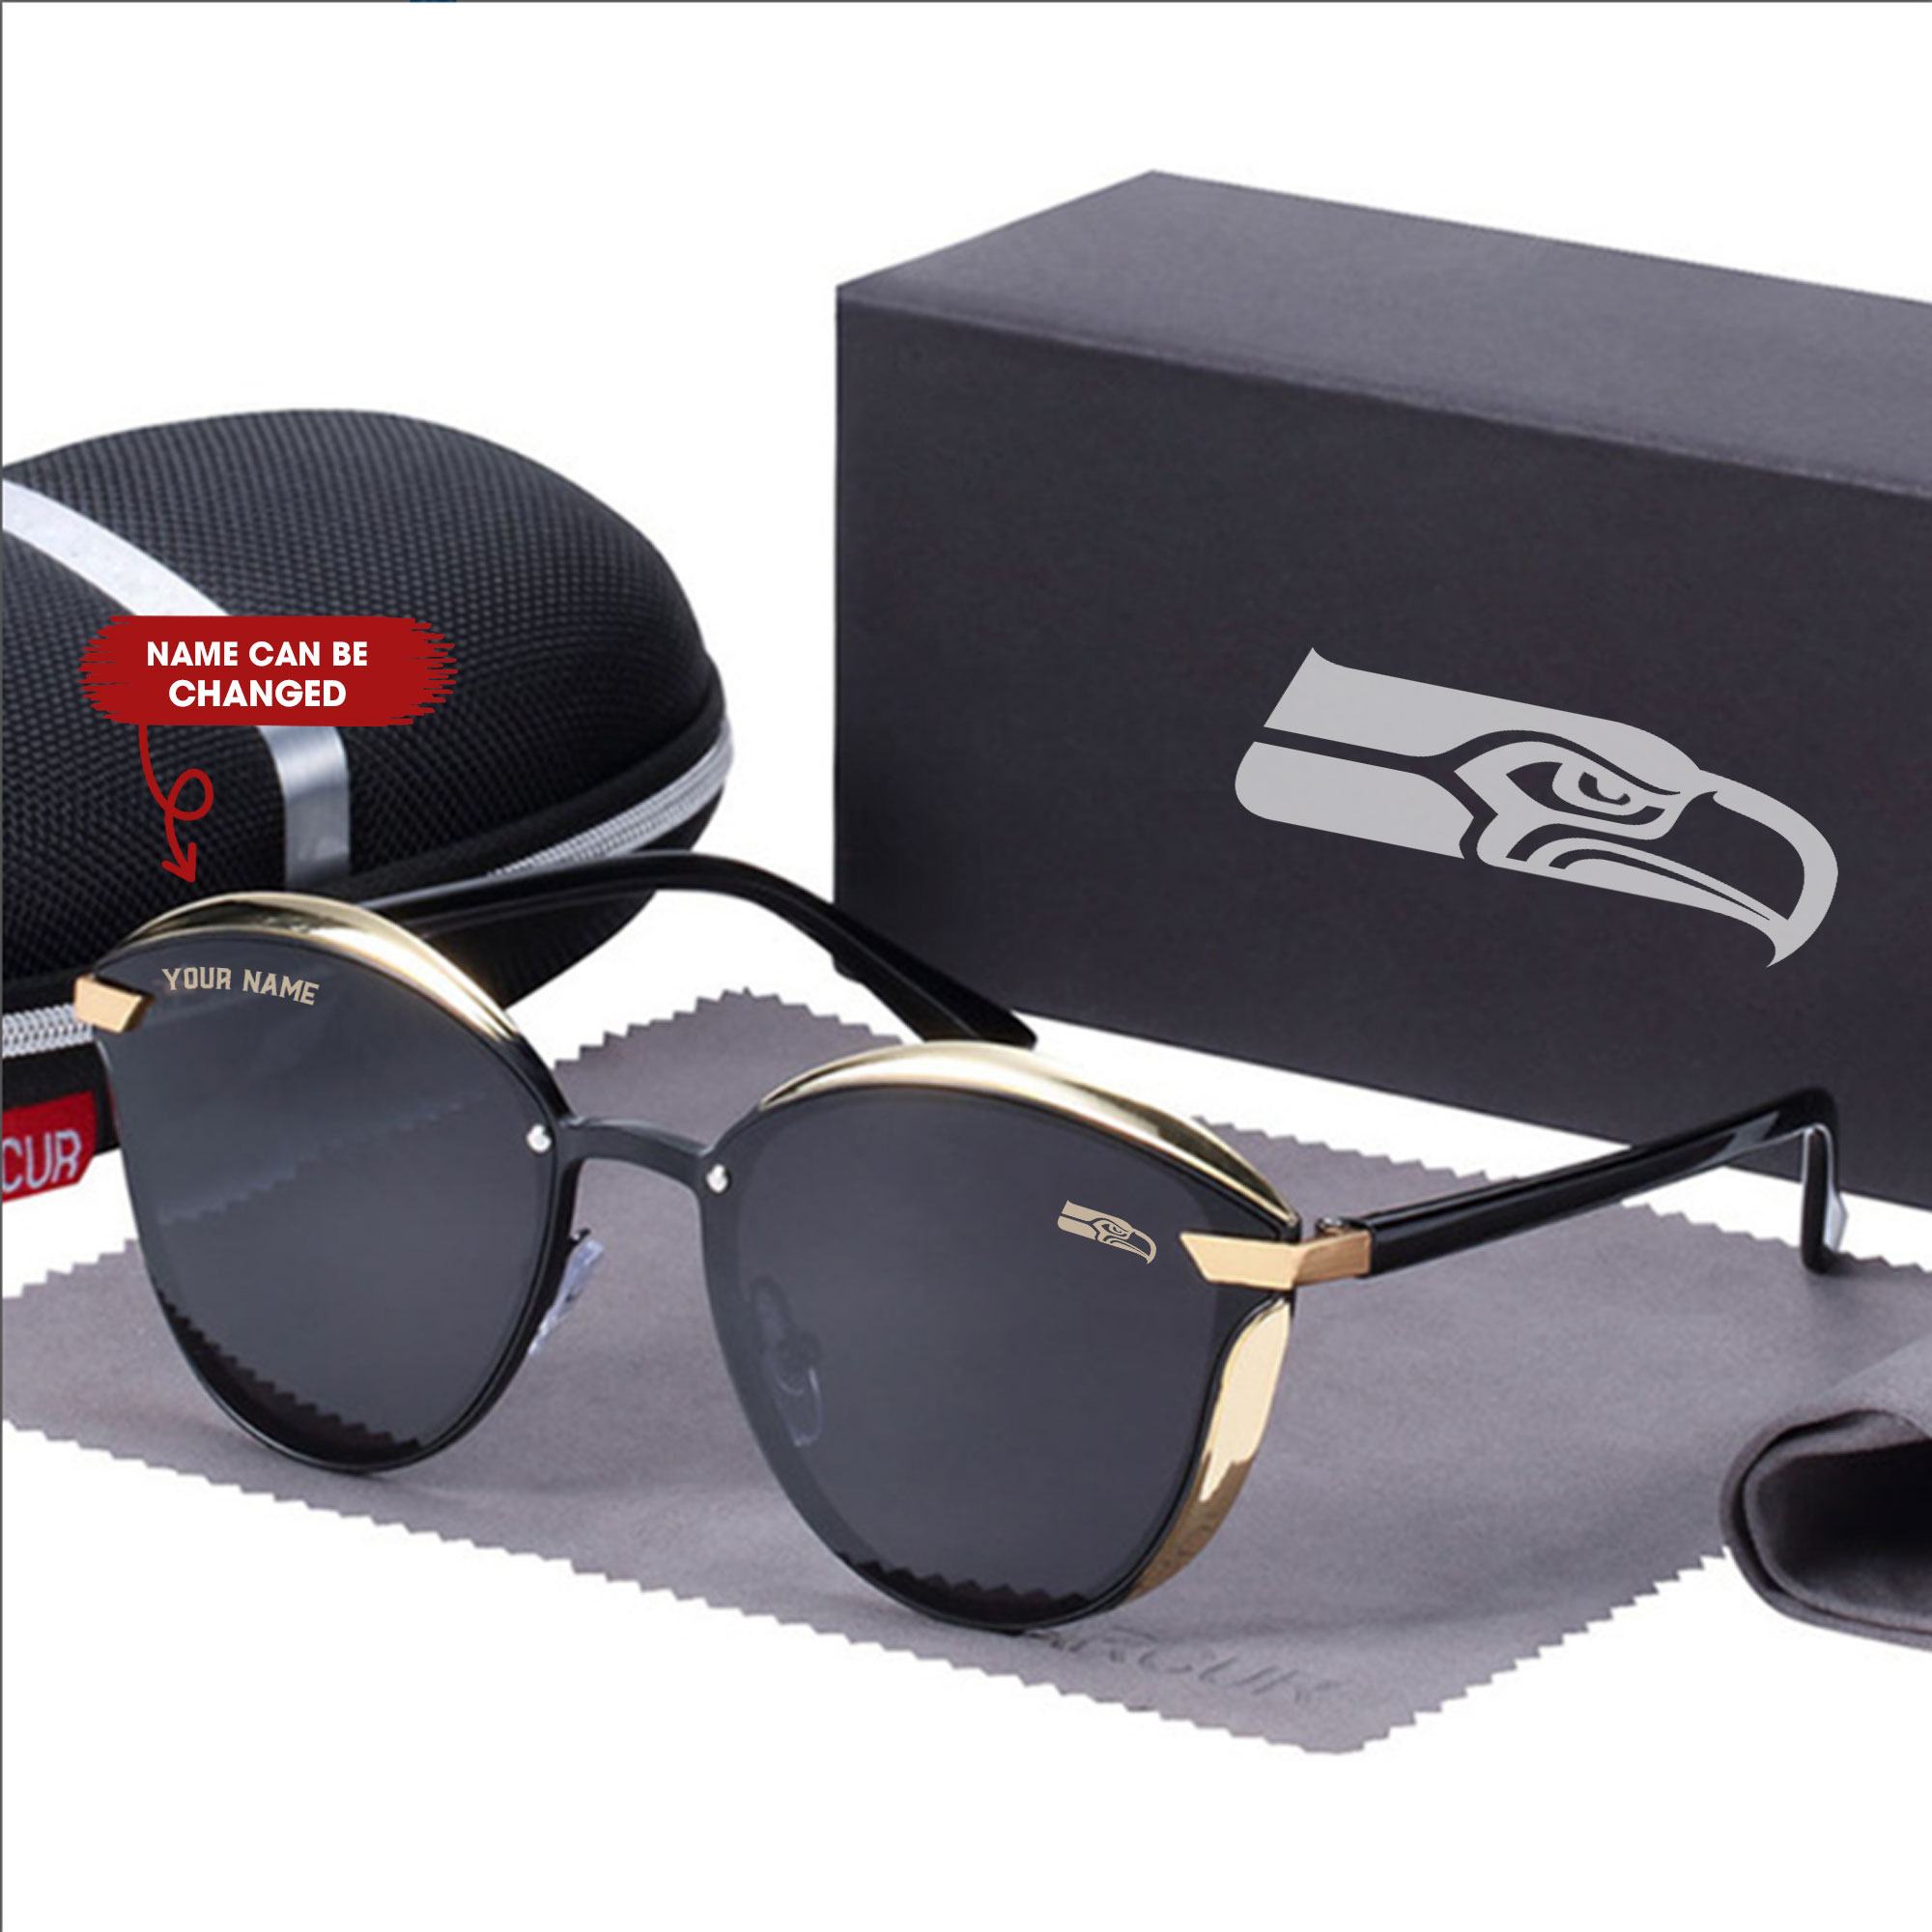 Sseattle seahawks sunglasses,